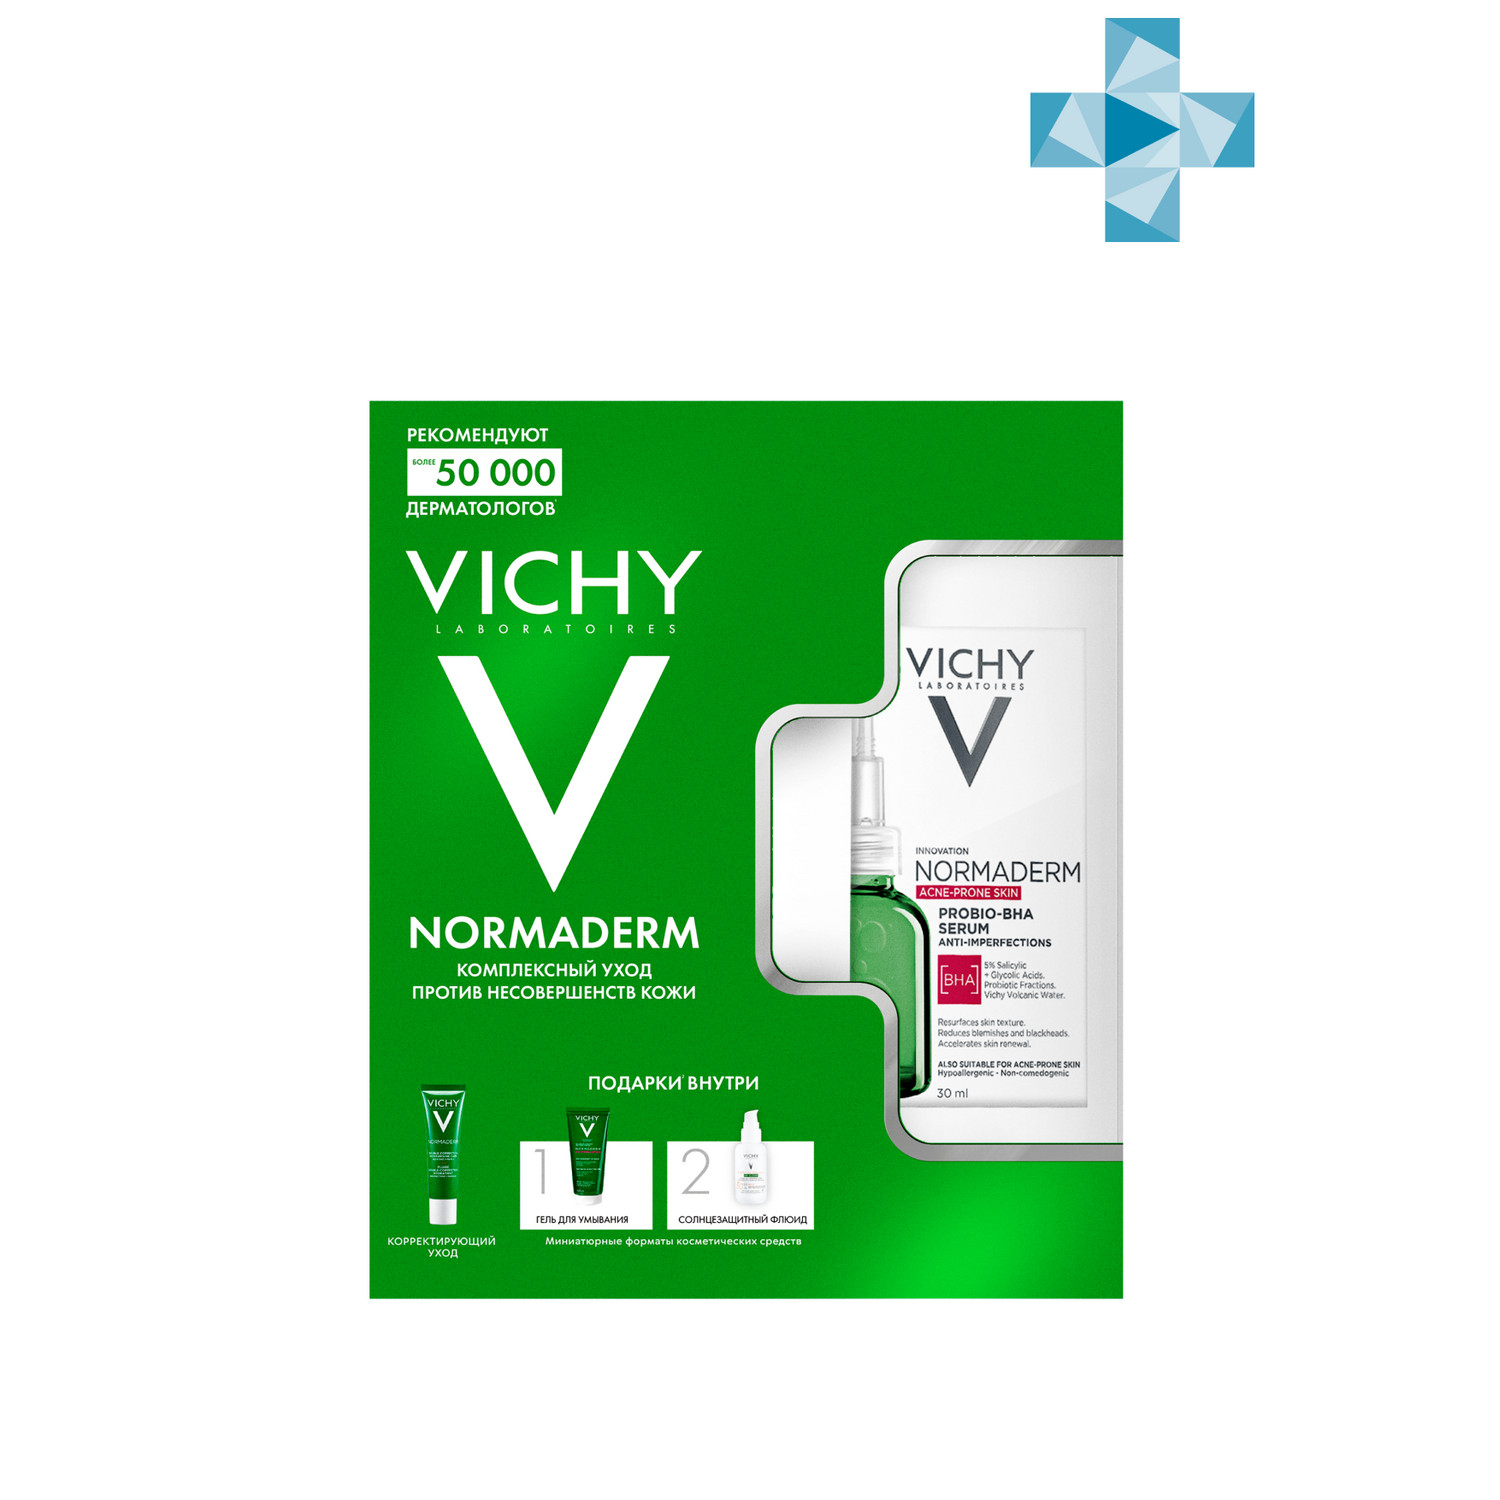 цена Vichy Набор для кожи, склонной к несовершенствам: сыворотка 30 мл + уход 30 мл + гель для умывания 50 мл + крем SPF 50+ 3 мл (Vichy, Normaderm)